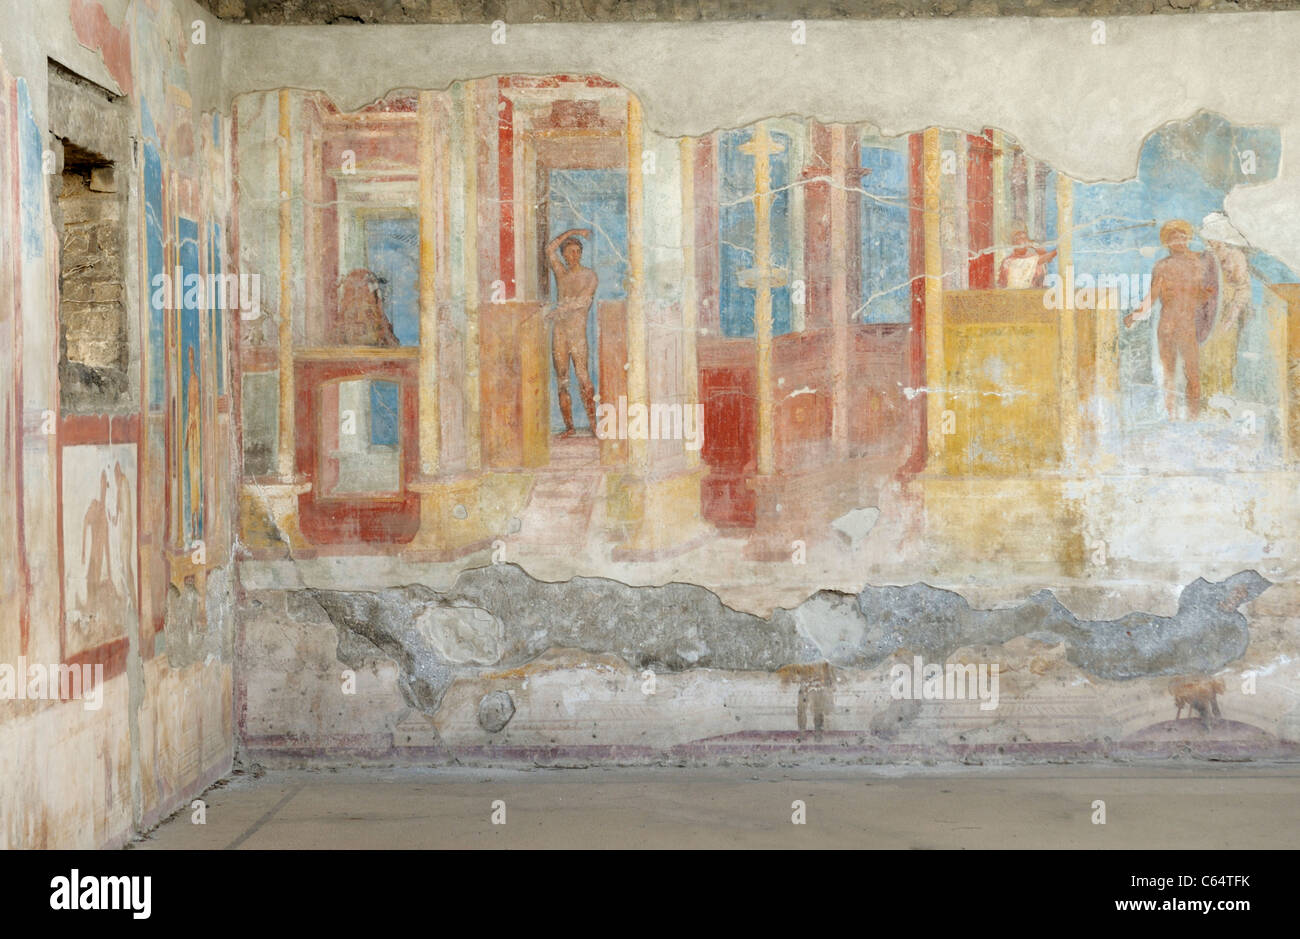 Terzo affreschi in stile, la parete della stanza in una casa convertita in una palestra, Pompei. Foto Stock